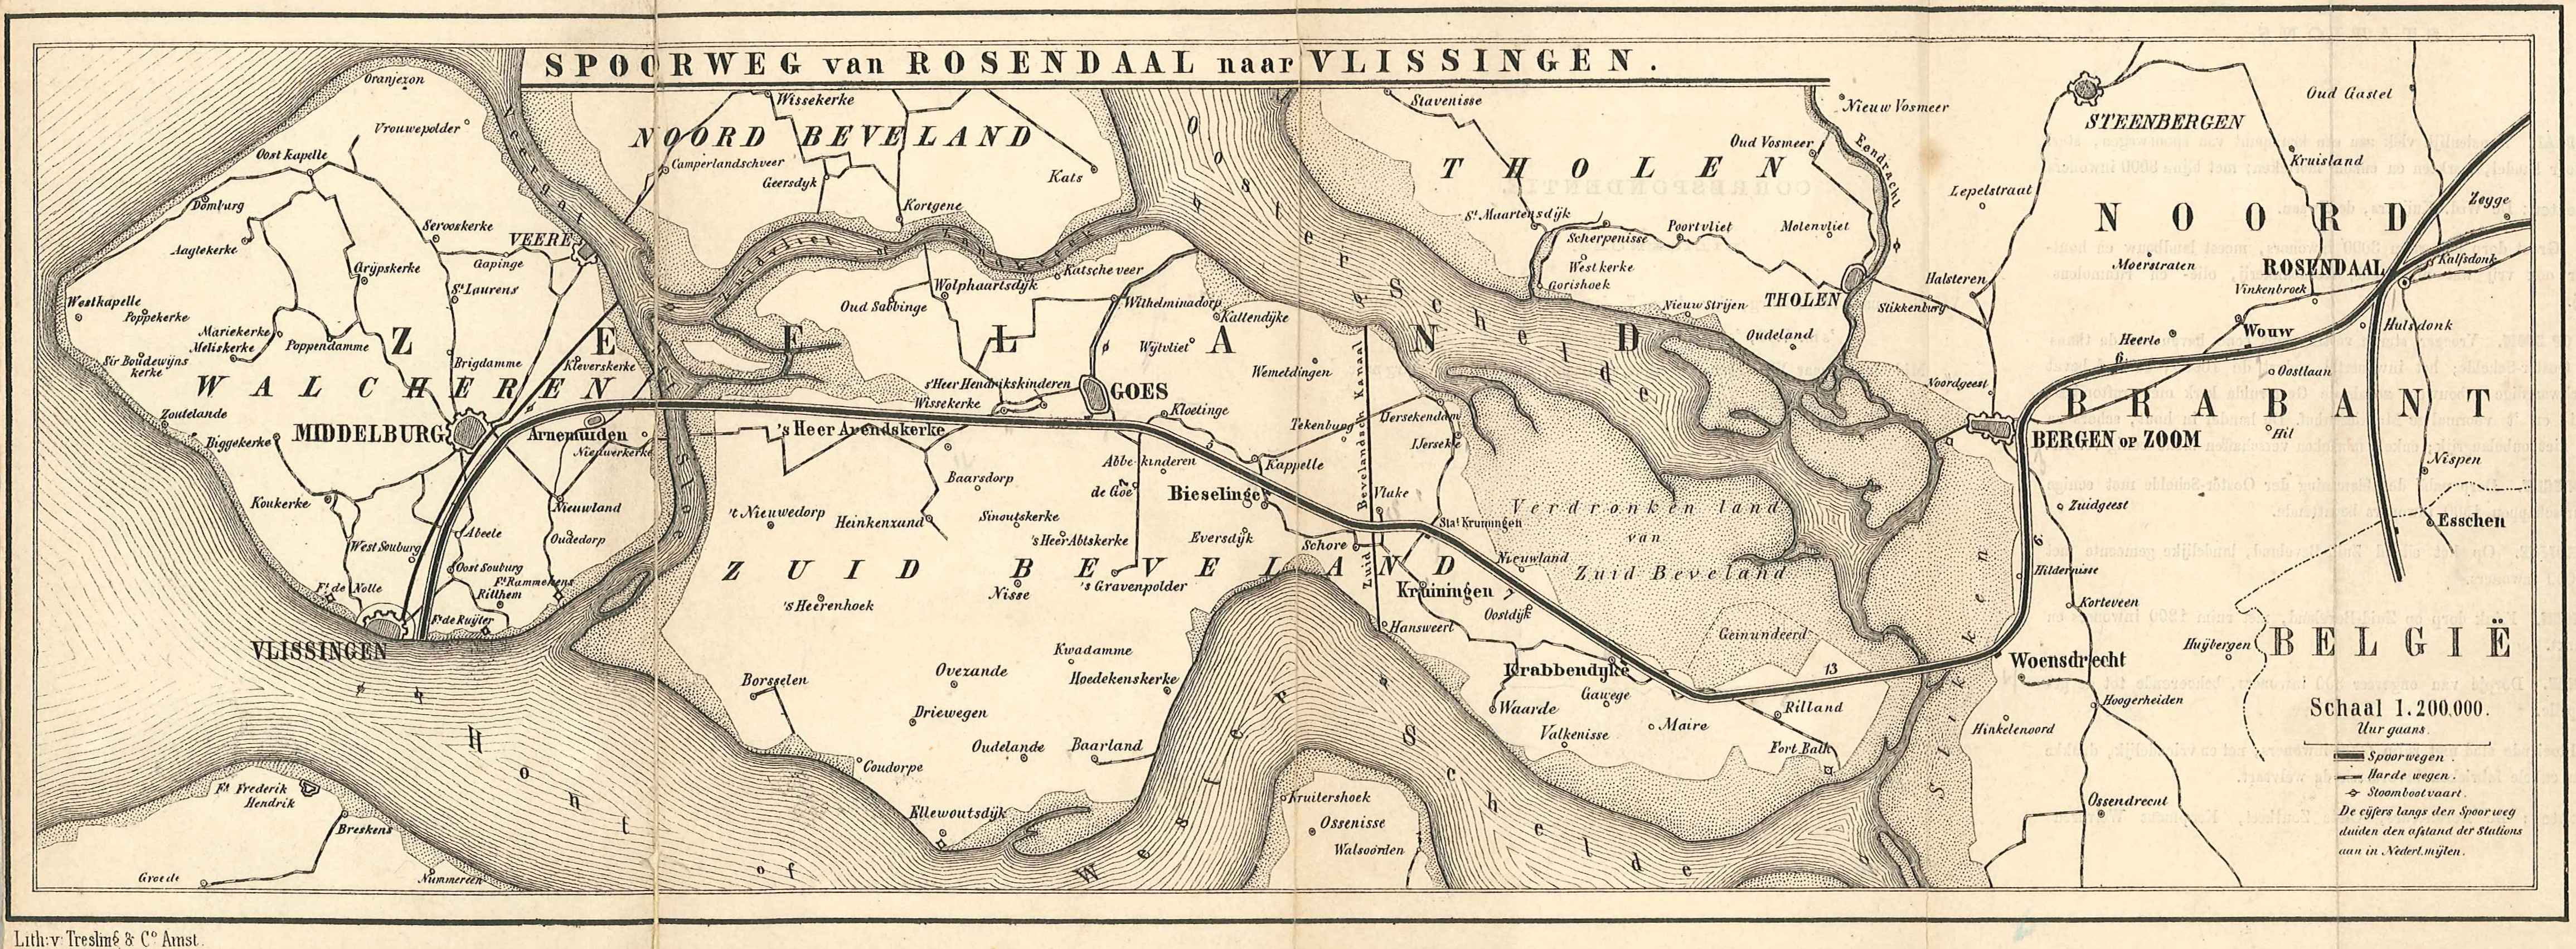 Kaart van de aan te leggen spoorlijn door Zuid-Beveland en Walcheren, 1865. GAG.HB.